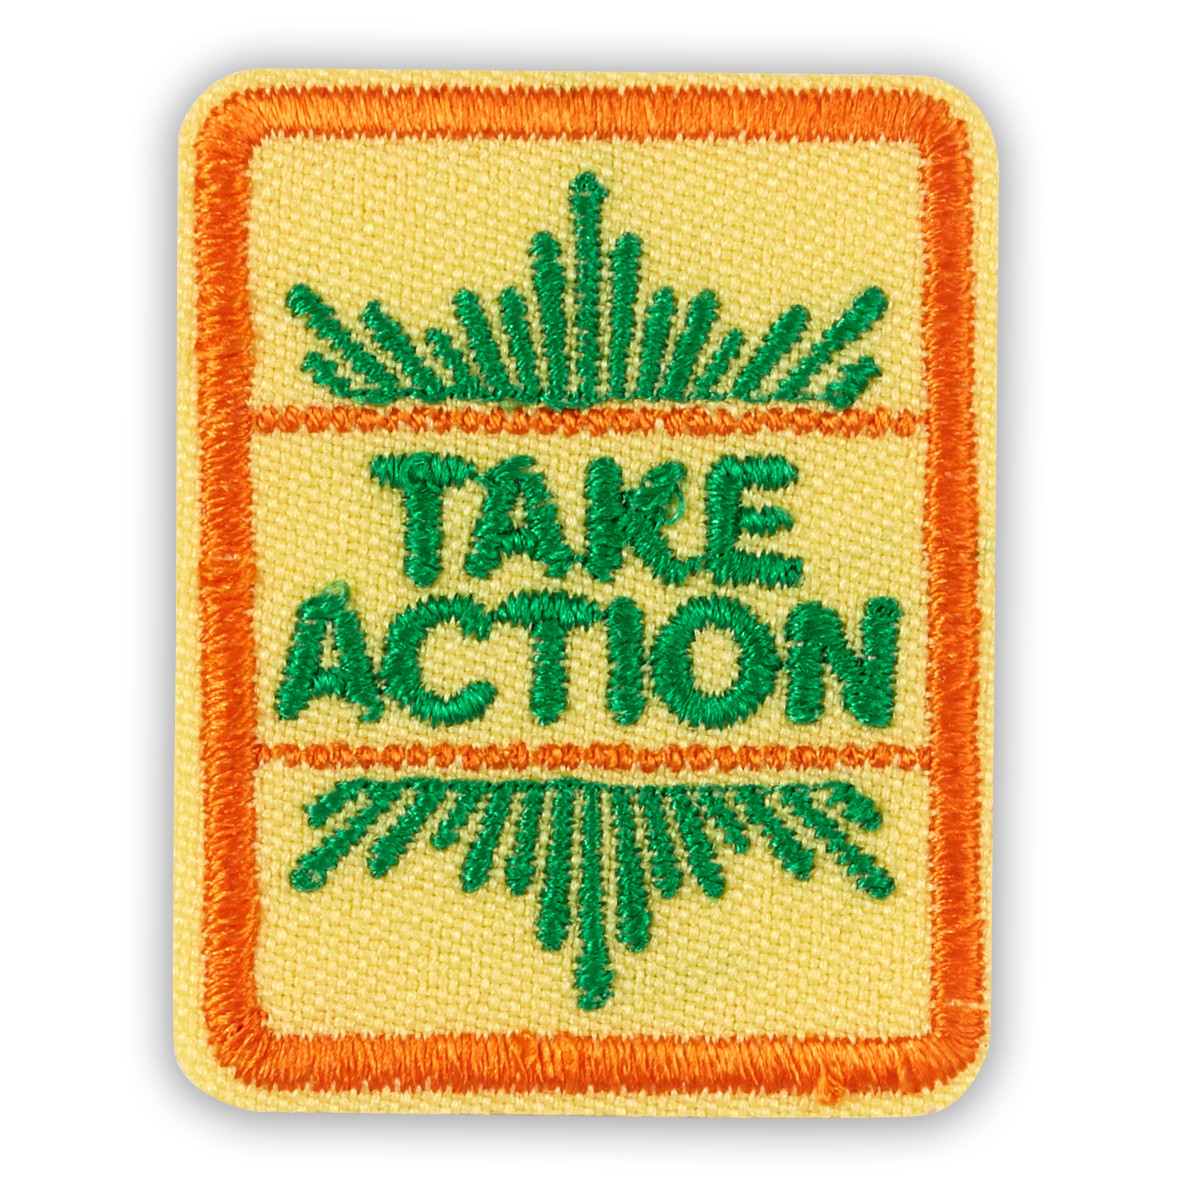 Take Action Award Badge